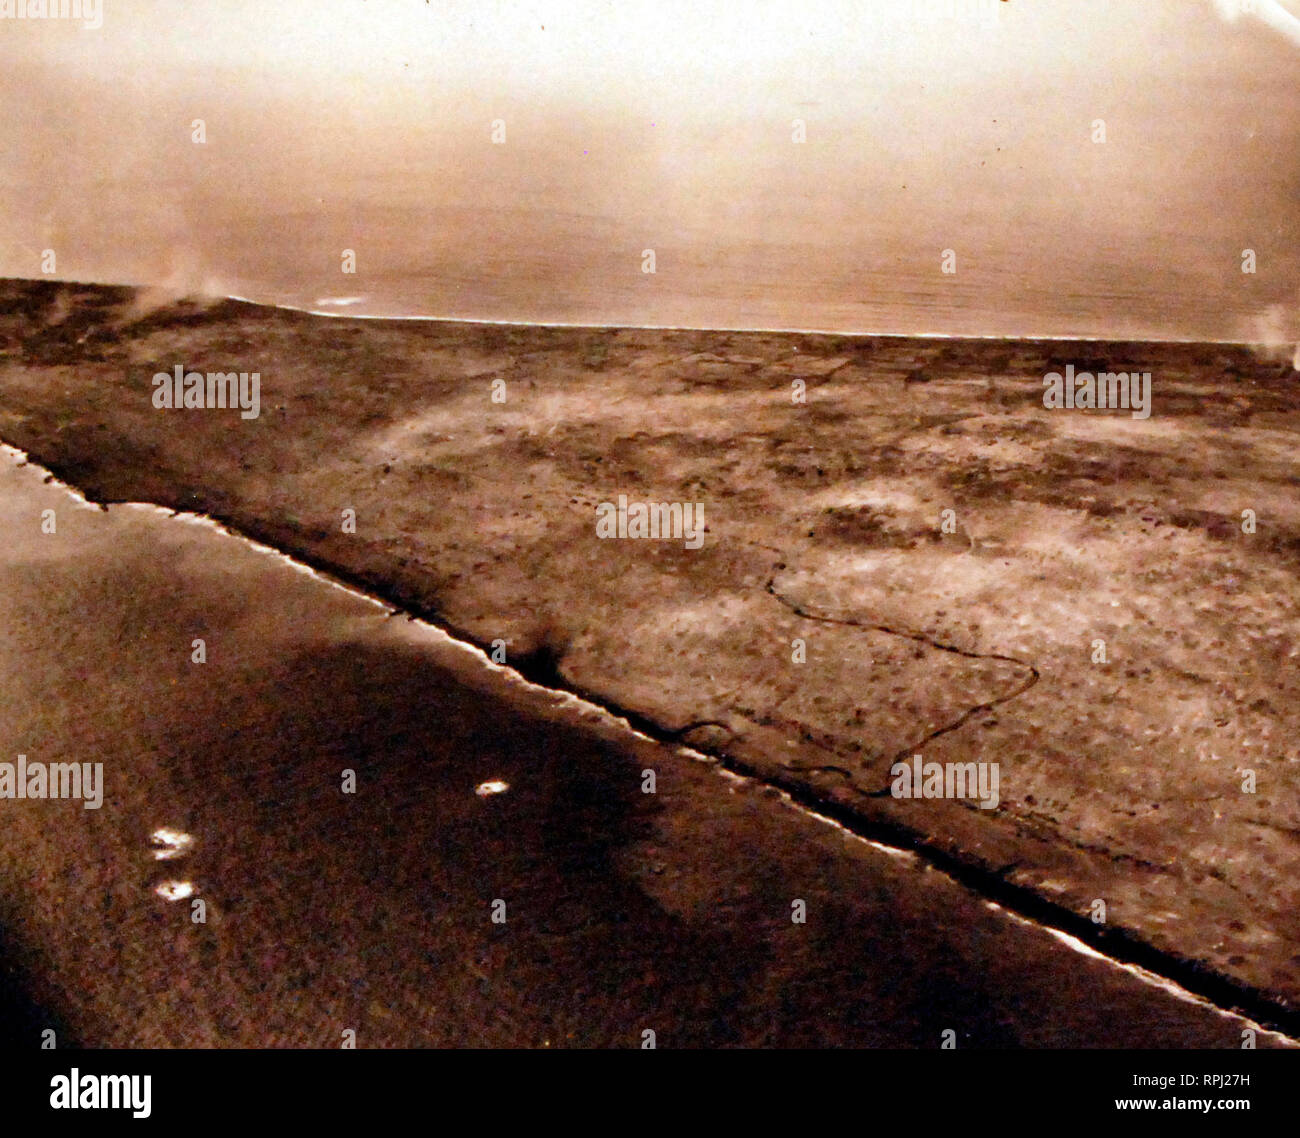 La batalla de Iwo Jima, en febrero y marzo de 1945. Demostrado: Pistas realizados por EE.UU. tanques anfibios haciendo su camino hacia Mt. Suribachi y dirigible 1, 4.5 horas después de H-hora. Fotografiado por avión desde el USS Makin Island (CVE) 93 el día D, 19 de febrero de 1945. Foto de stock